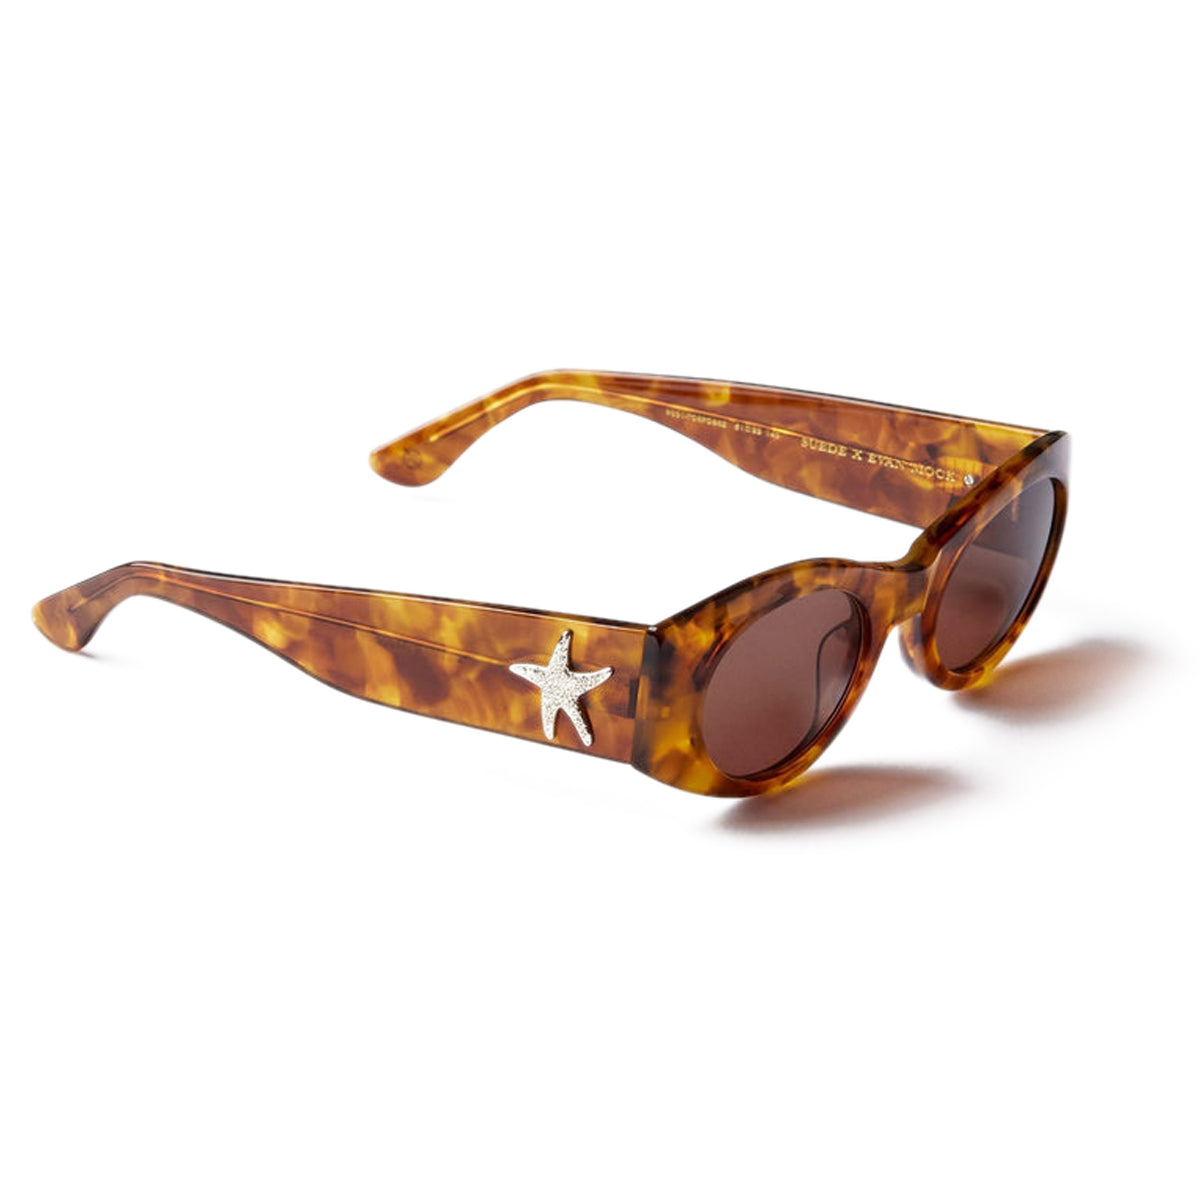 Epokhe Suede Sunglasses - Tortoise Polished/Bronze image 1